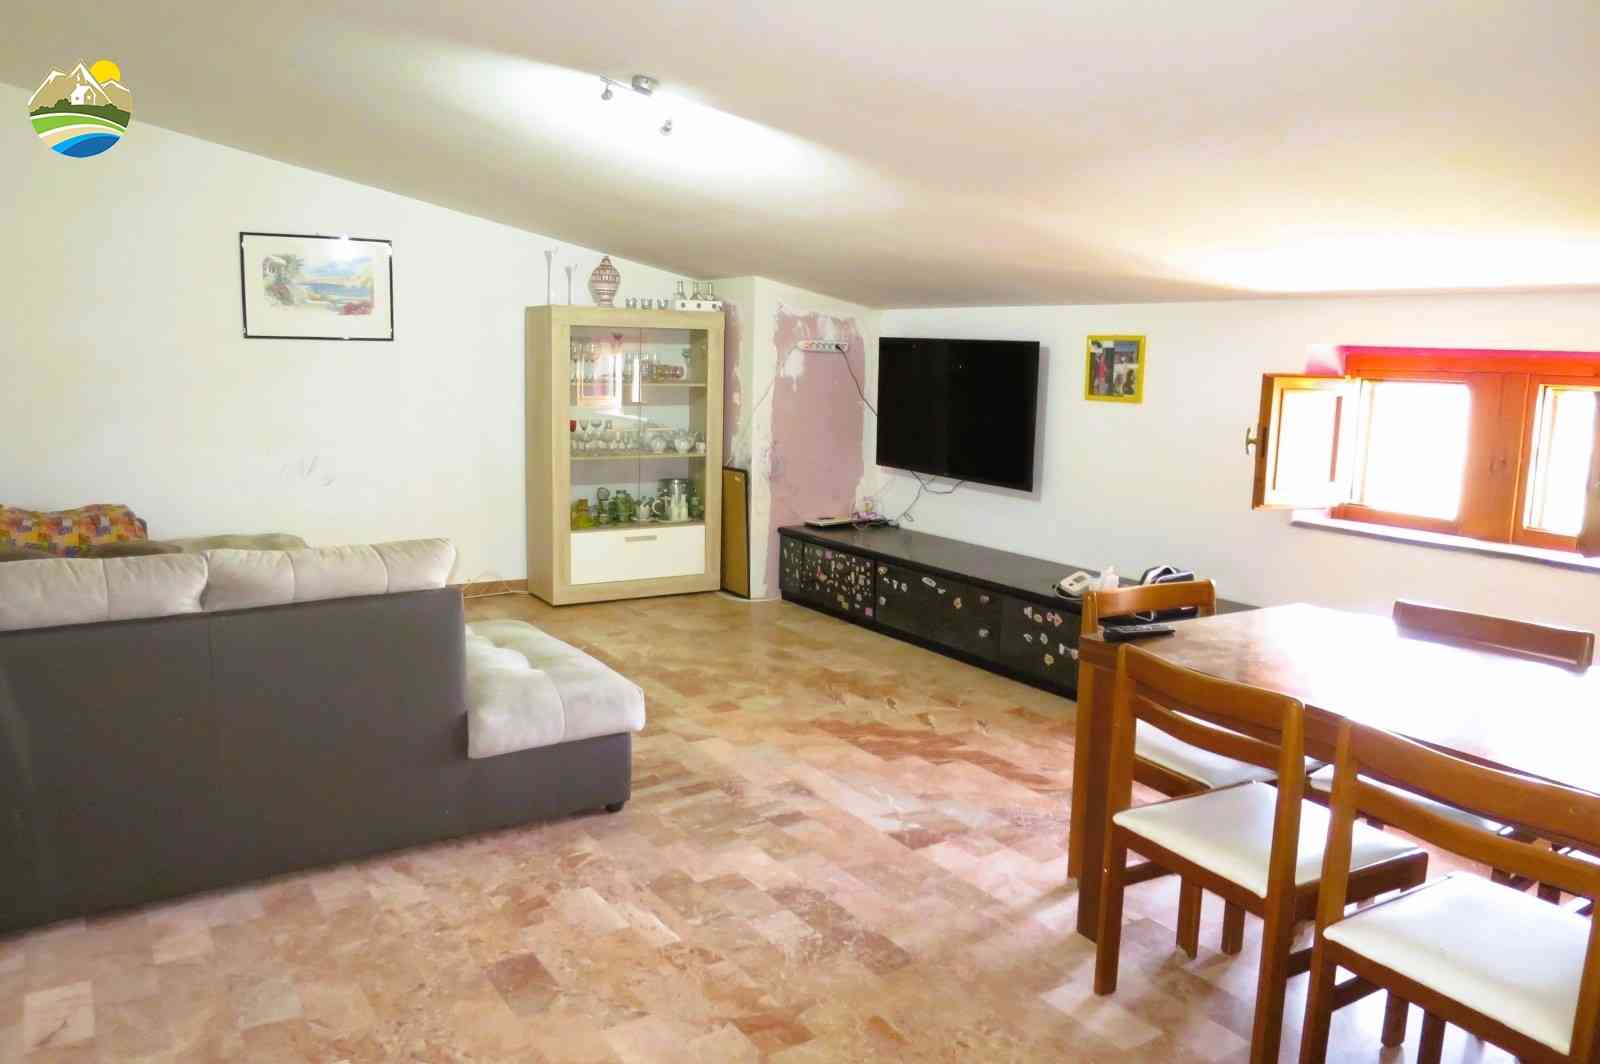 Casa in paese Casa in paese in vendita Pineto (TE), Appartamento del Corso - Pineto - EUR 116.810 590